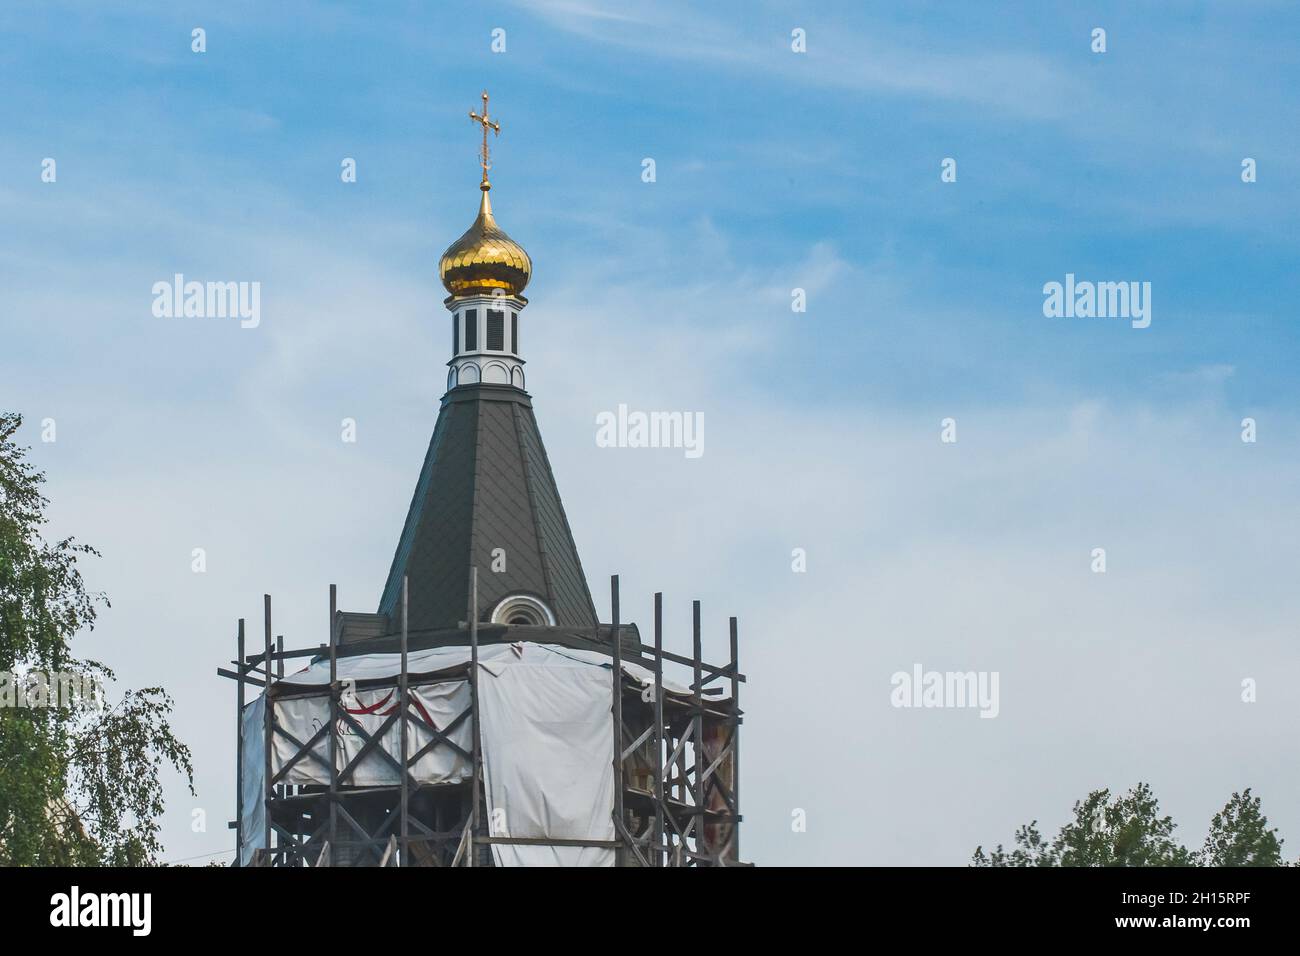 Réparation, restauration ou construction d'une nouvelle église dans la ville contre le ciel bleu. Banque D'Images